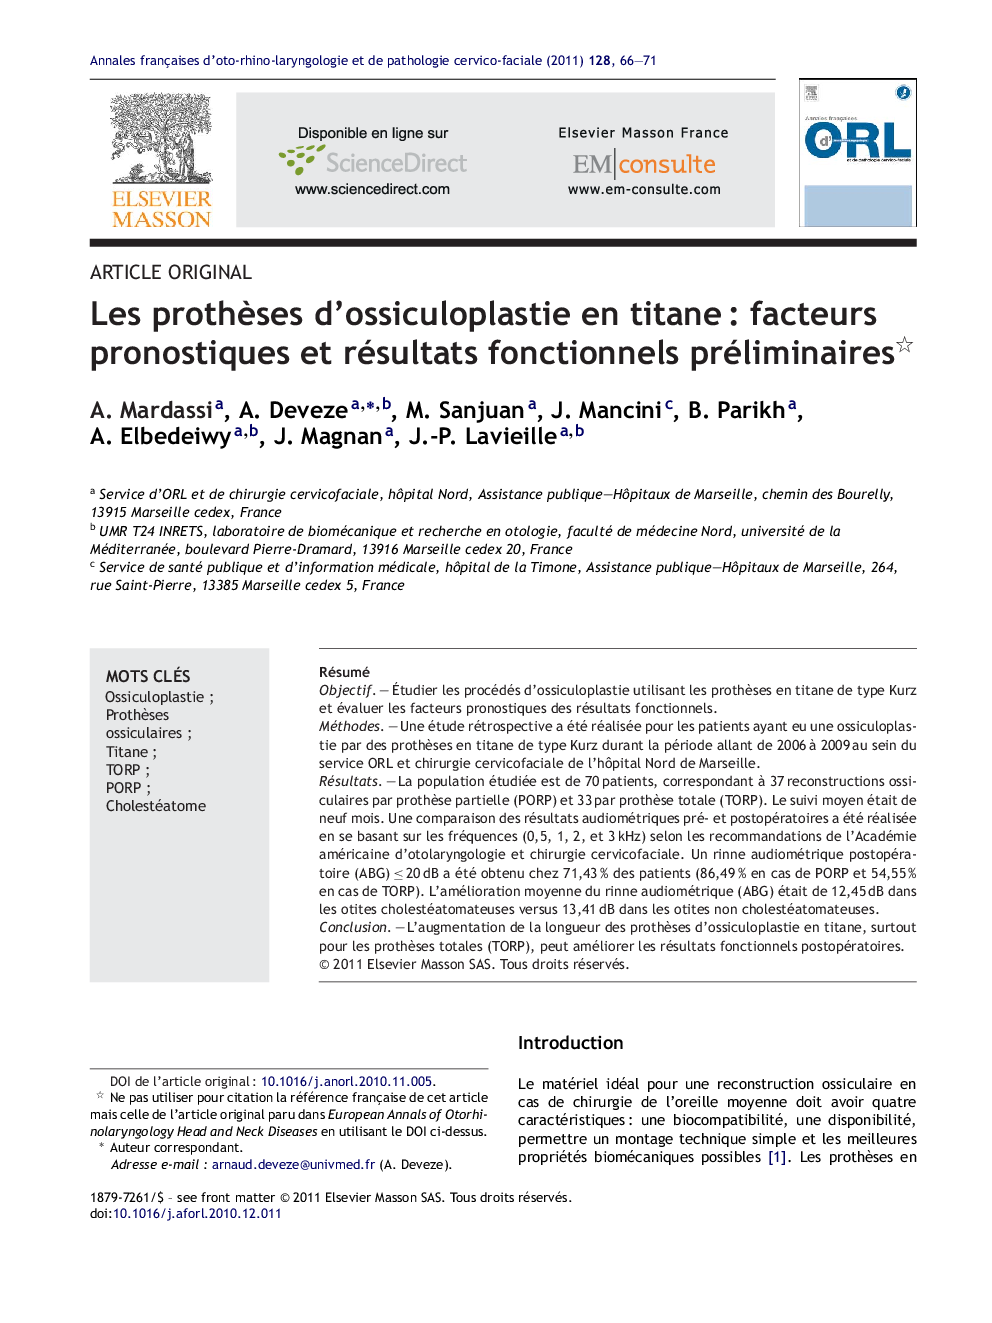 Les prothÃ¨ses d'ossiculoplastie en titaneÂ : facteurs pronostiques et résultats fonctionnels préliminaires